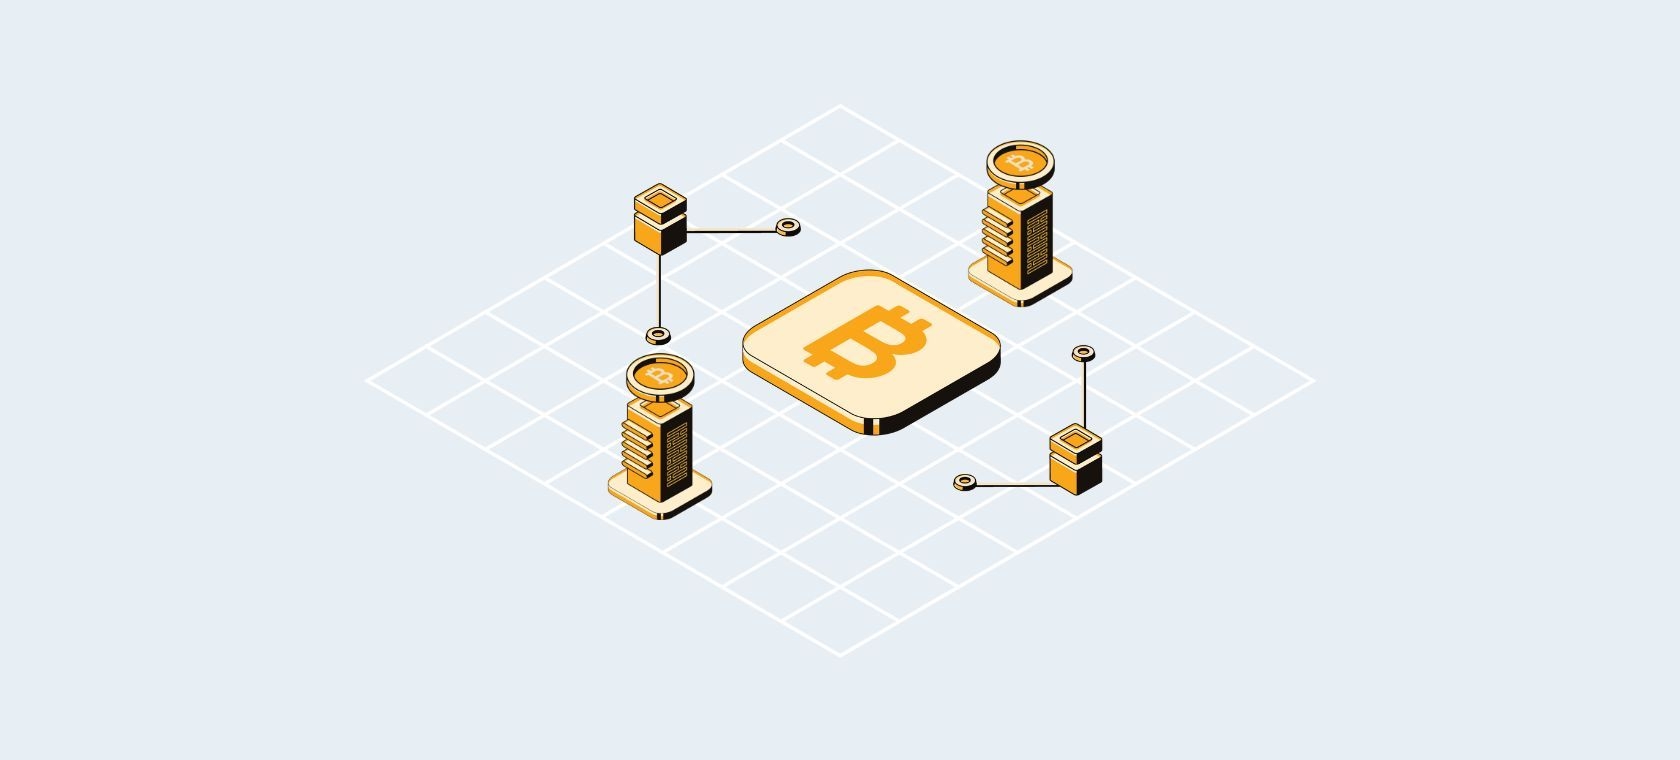 Was ist Bitcoin? - Eine Einführung in die Blockchain-Technologie